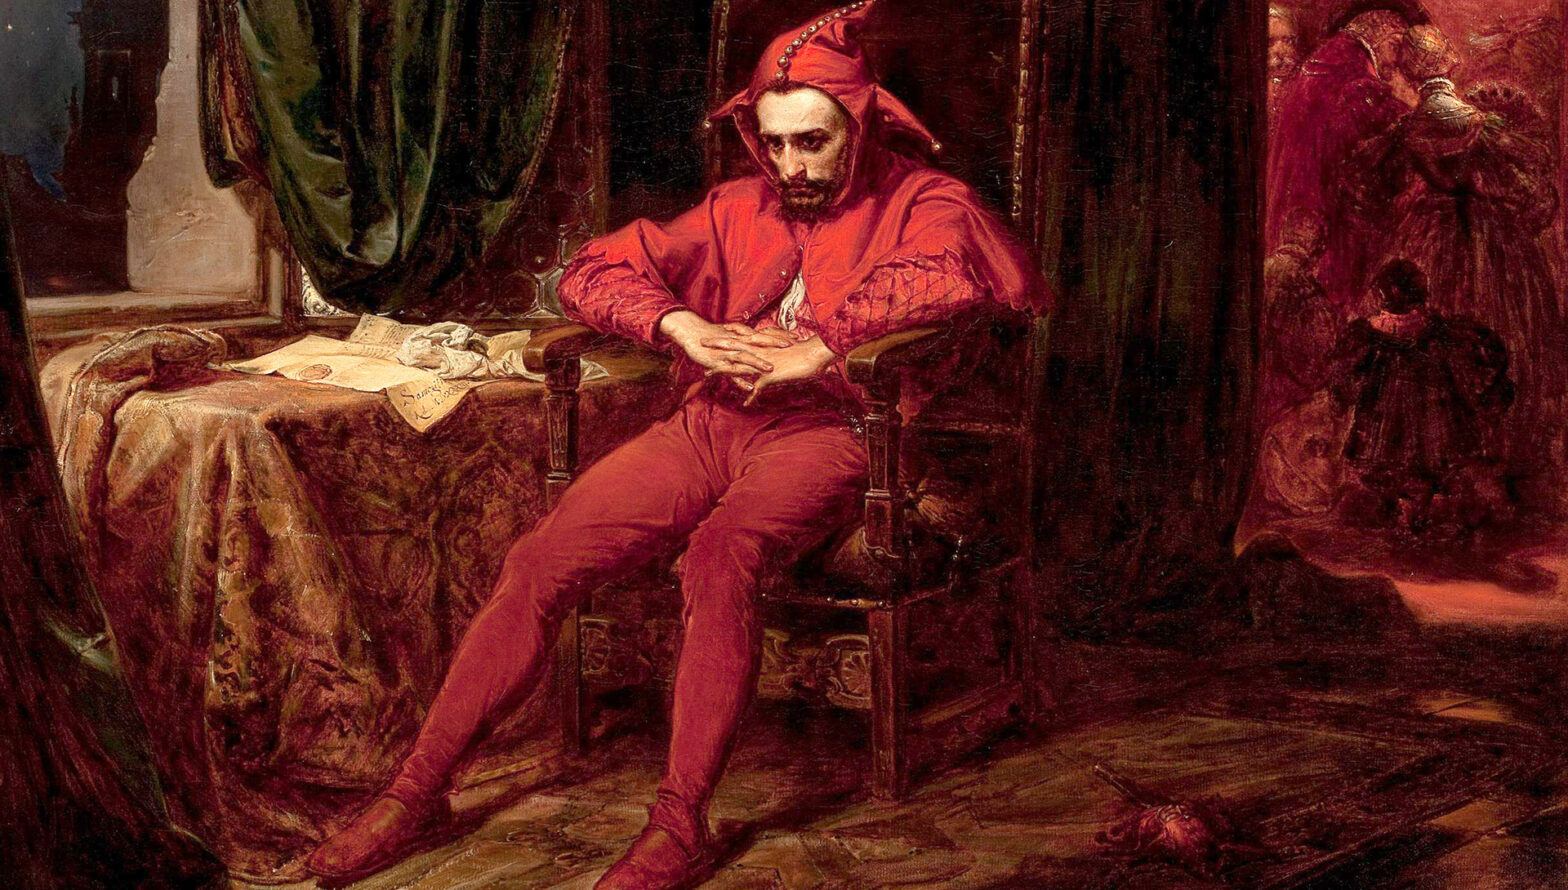 Obraz Jana Matejki Stańczyk. Mężczyzna w czerwonym stroju i czapce błazna siedzi zamyślony na krześle. Splecione dłonie trzyma przed sobą. W sąsiednim pokoju biesiadujący dworzanie.